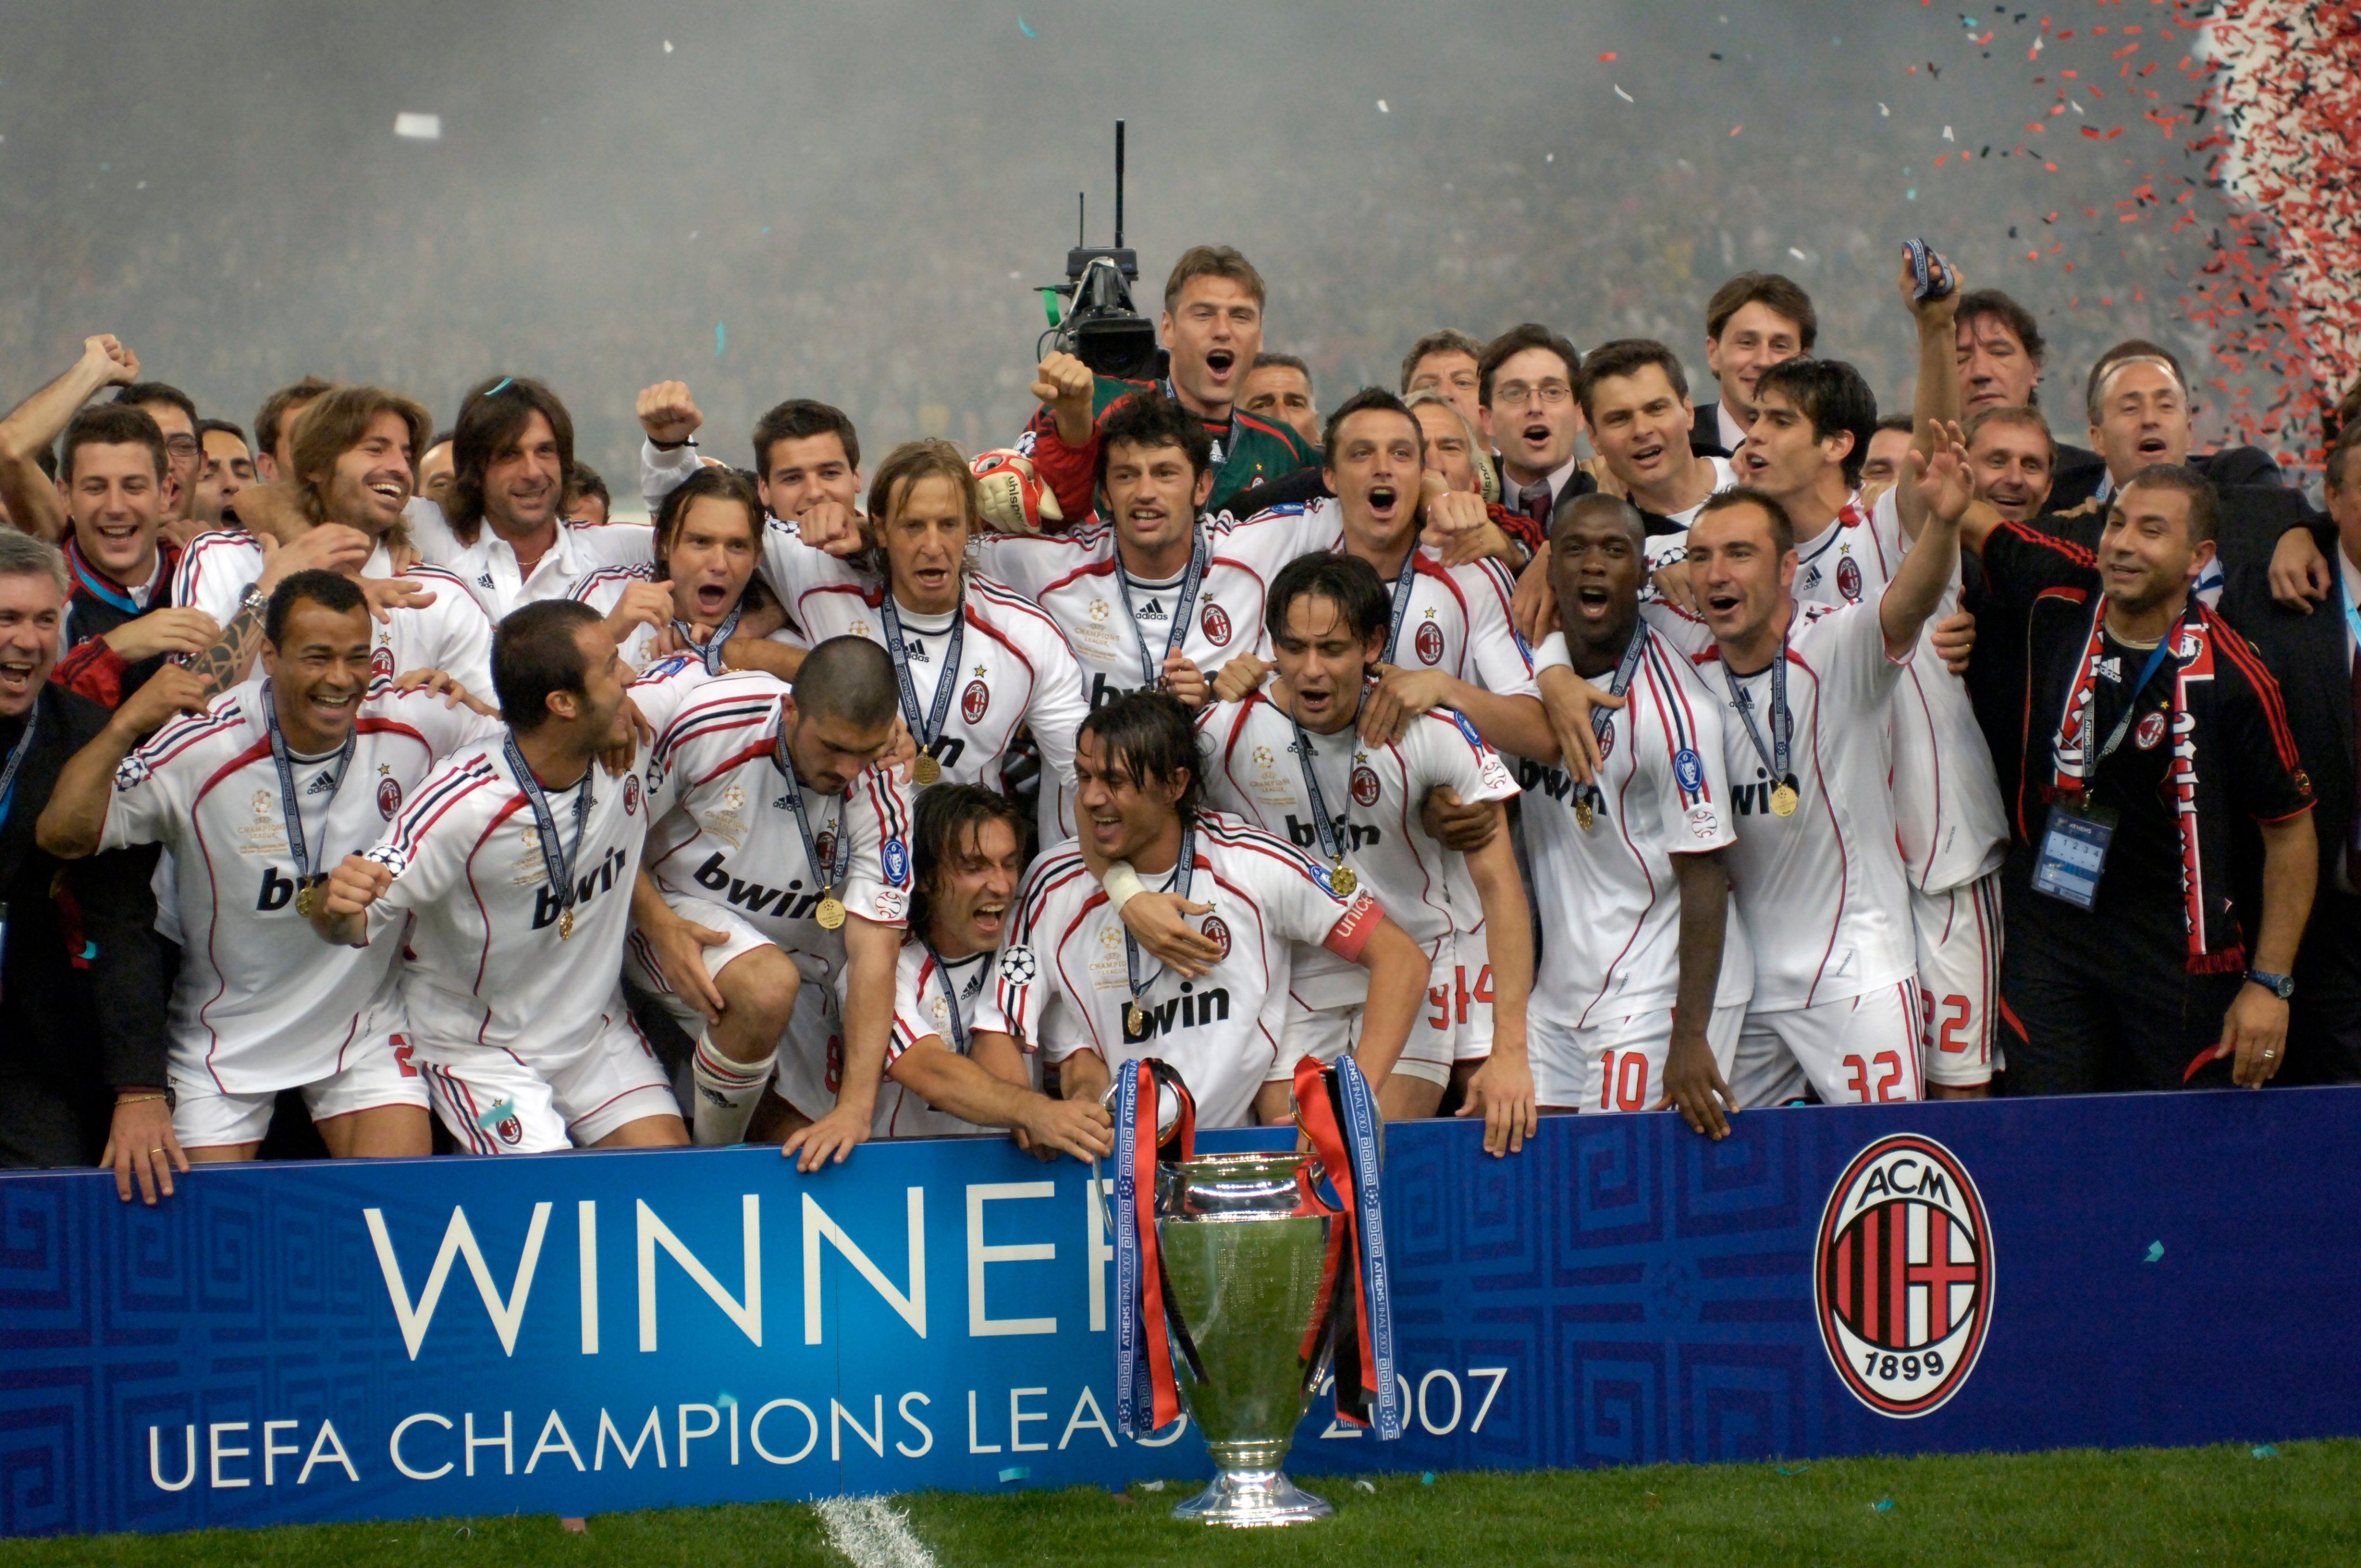 AC Milan saat menjuarai Liga Champions tahun 2007